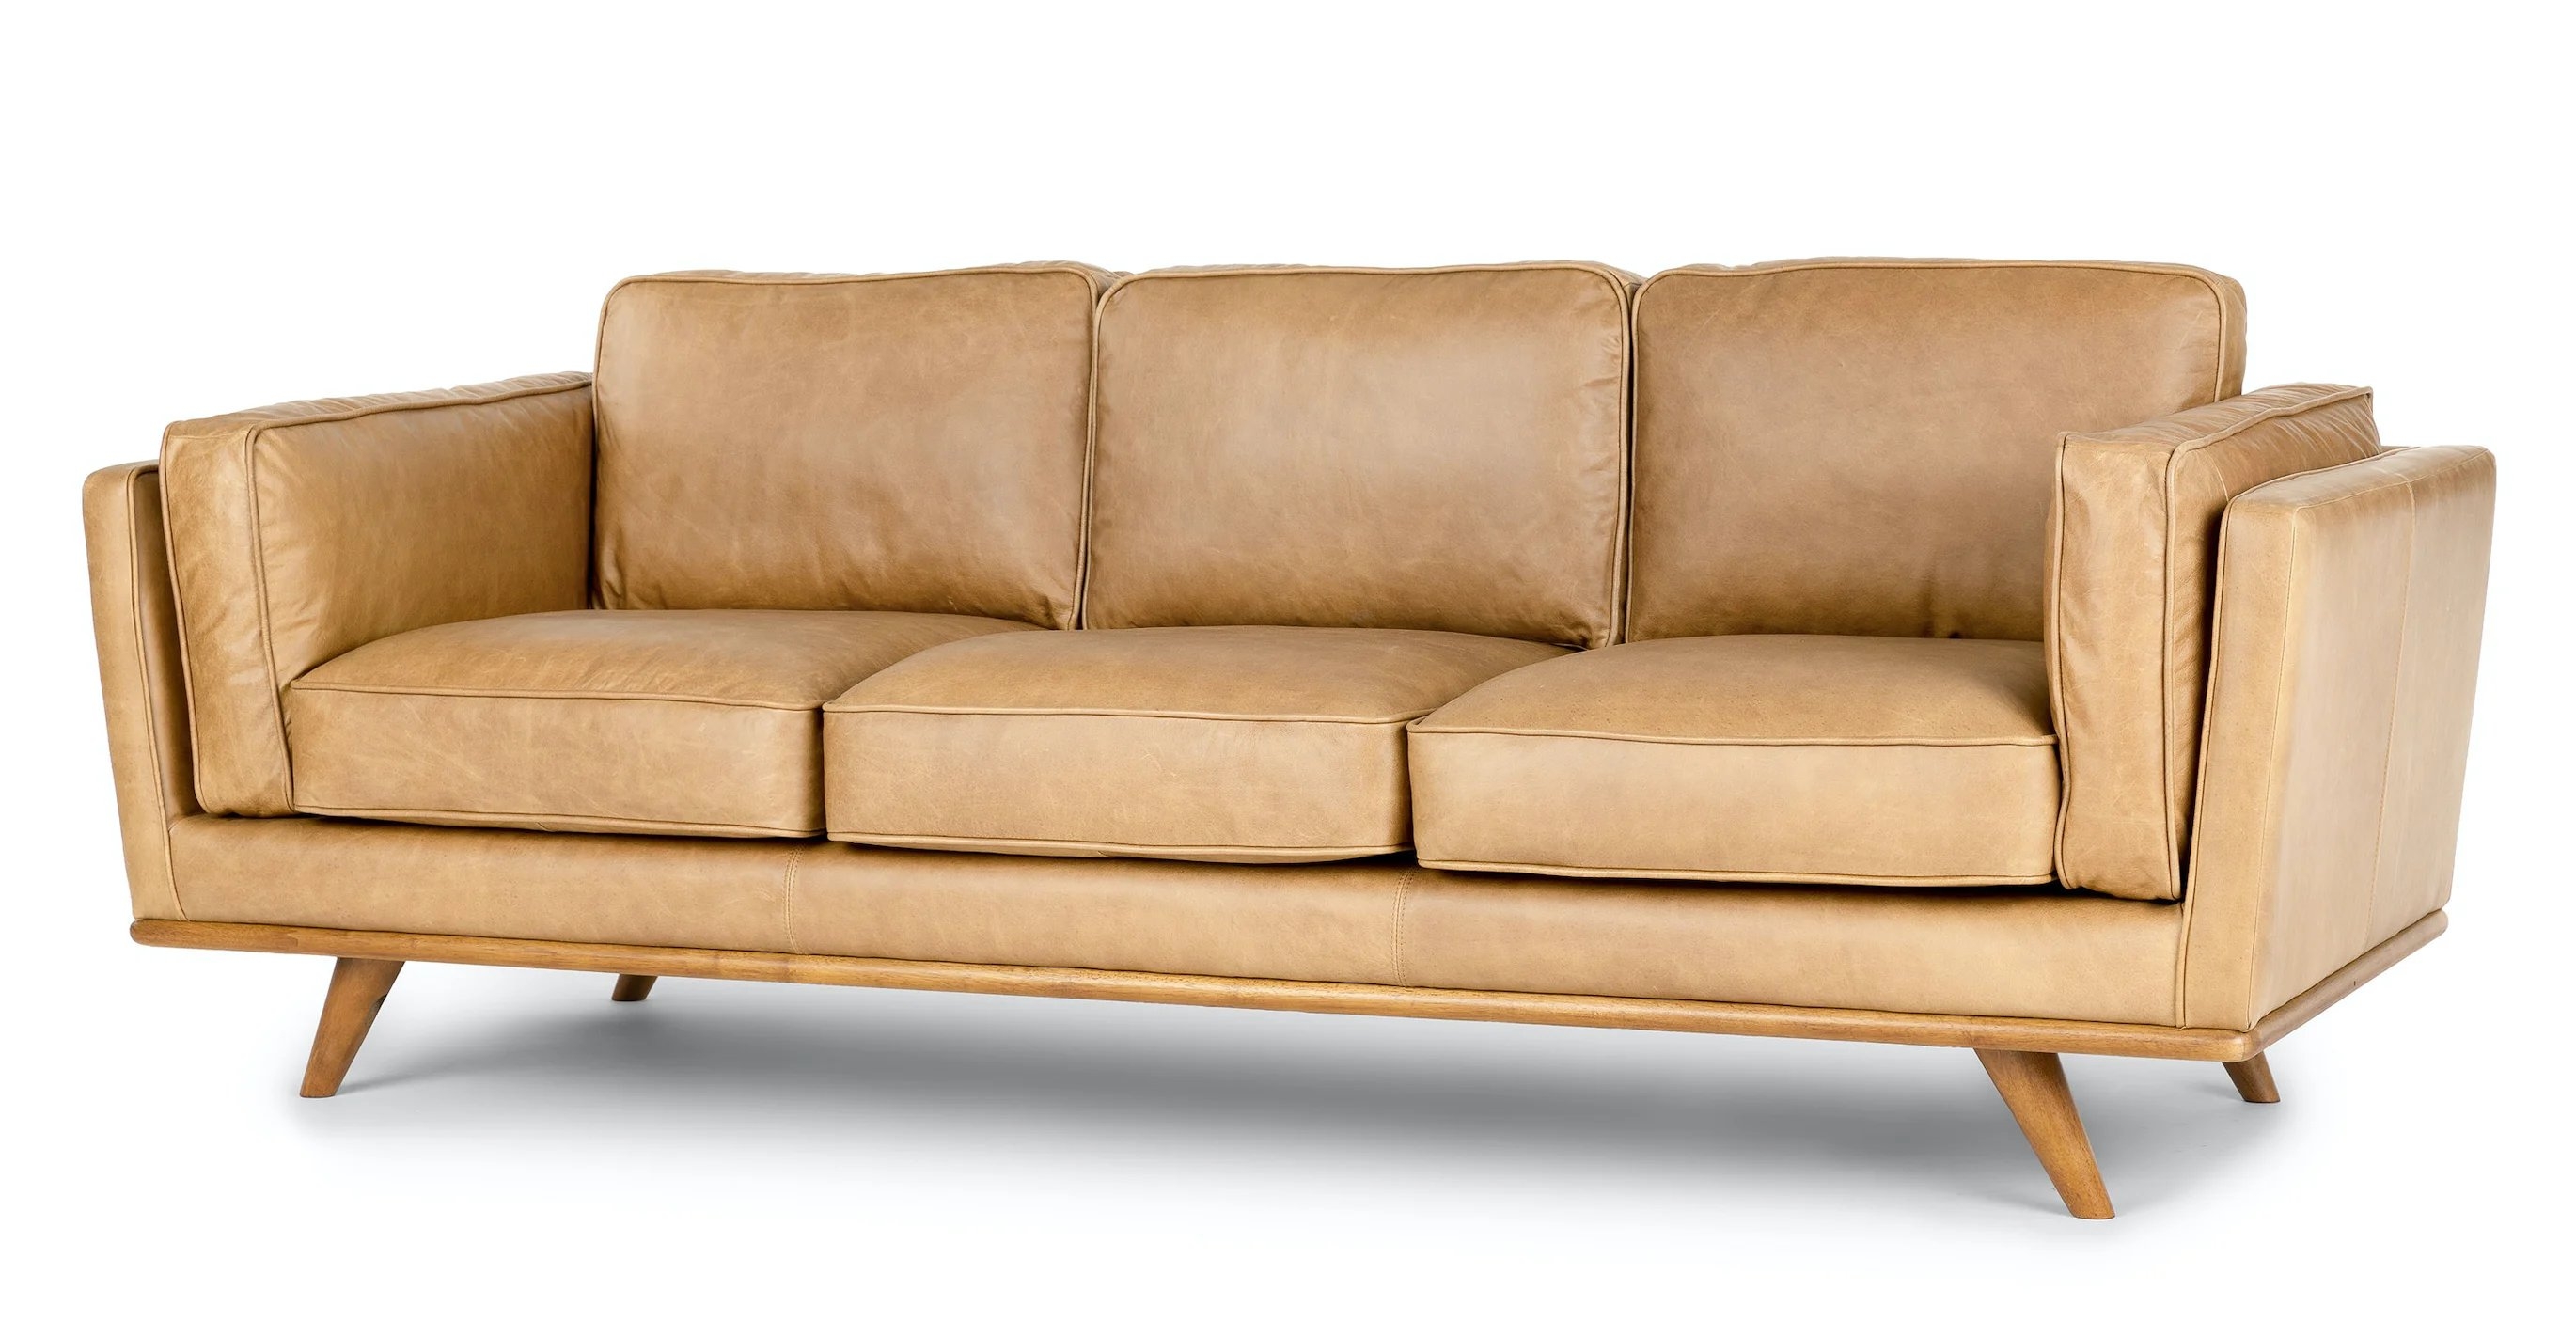 Timber Charme Tan Sofa - Image 1